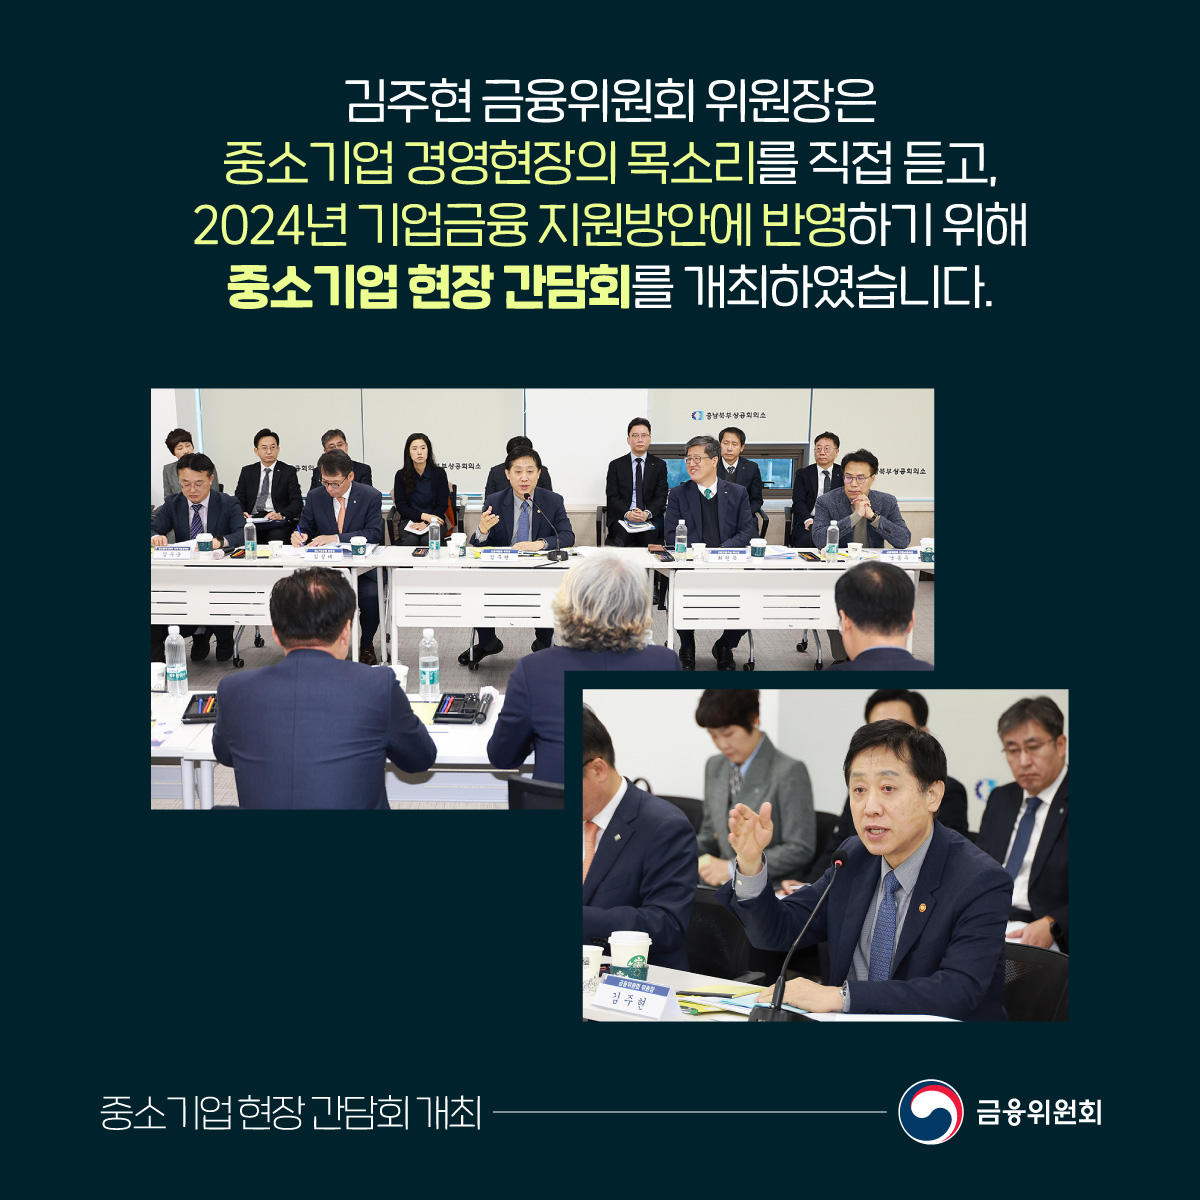 김주현 금융위원회 위원장은 중소기업 경영현장의 목소리를 직접 듣고, 2024년 기업금융 지원방안에 반영하기 위해 중소기업 현장 간담회를 개최하였습니다.